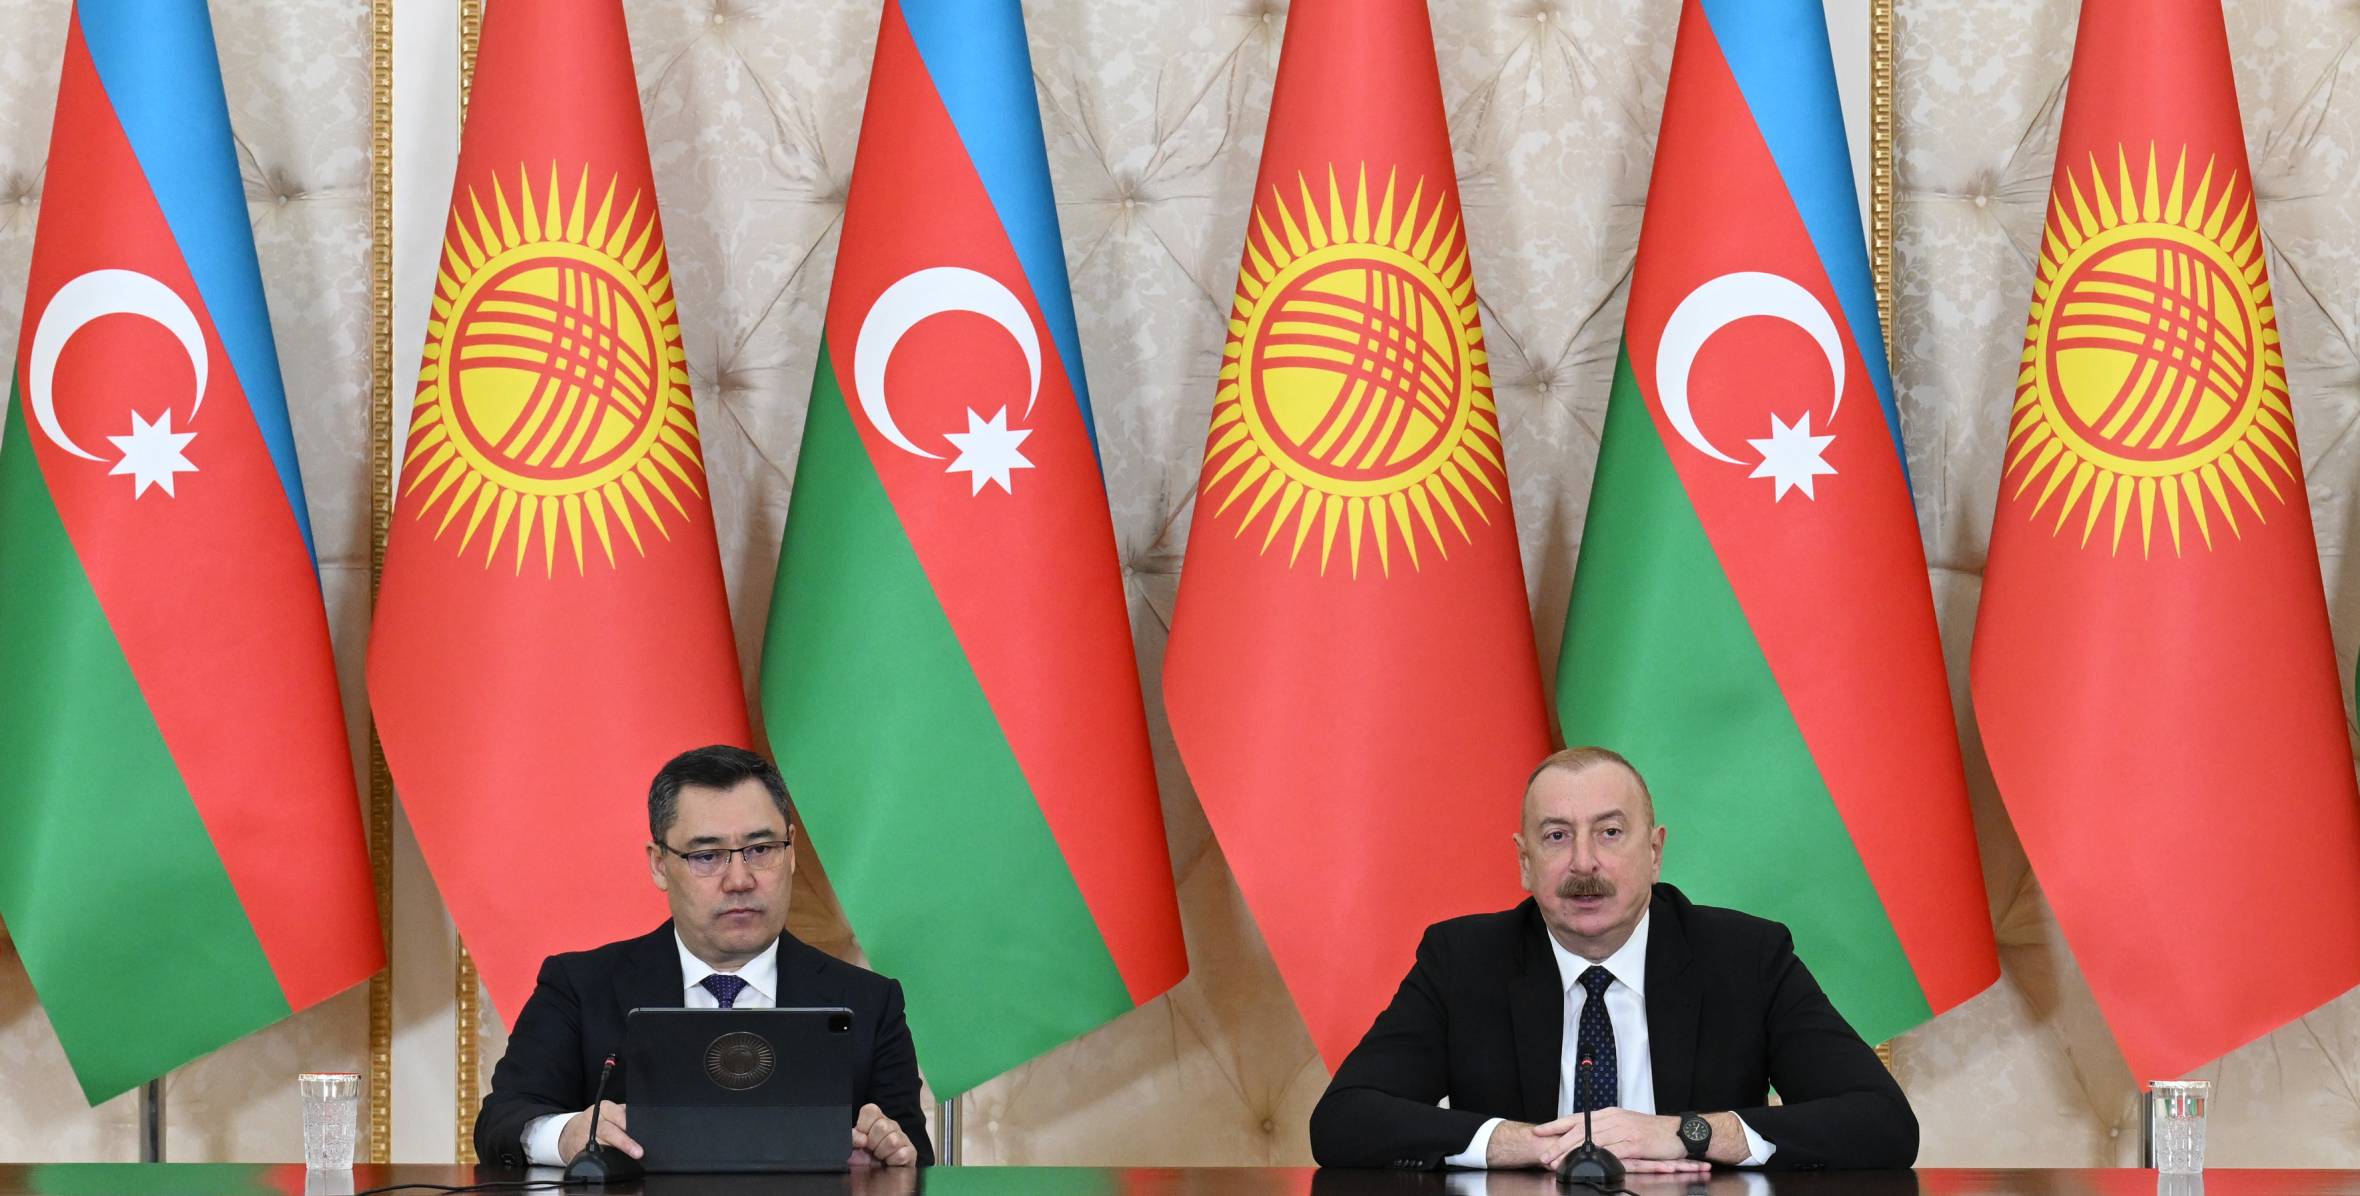 President Ilham Aliyev and President Sadyr Zhaparov made press statements